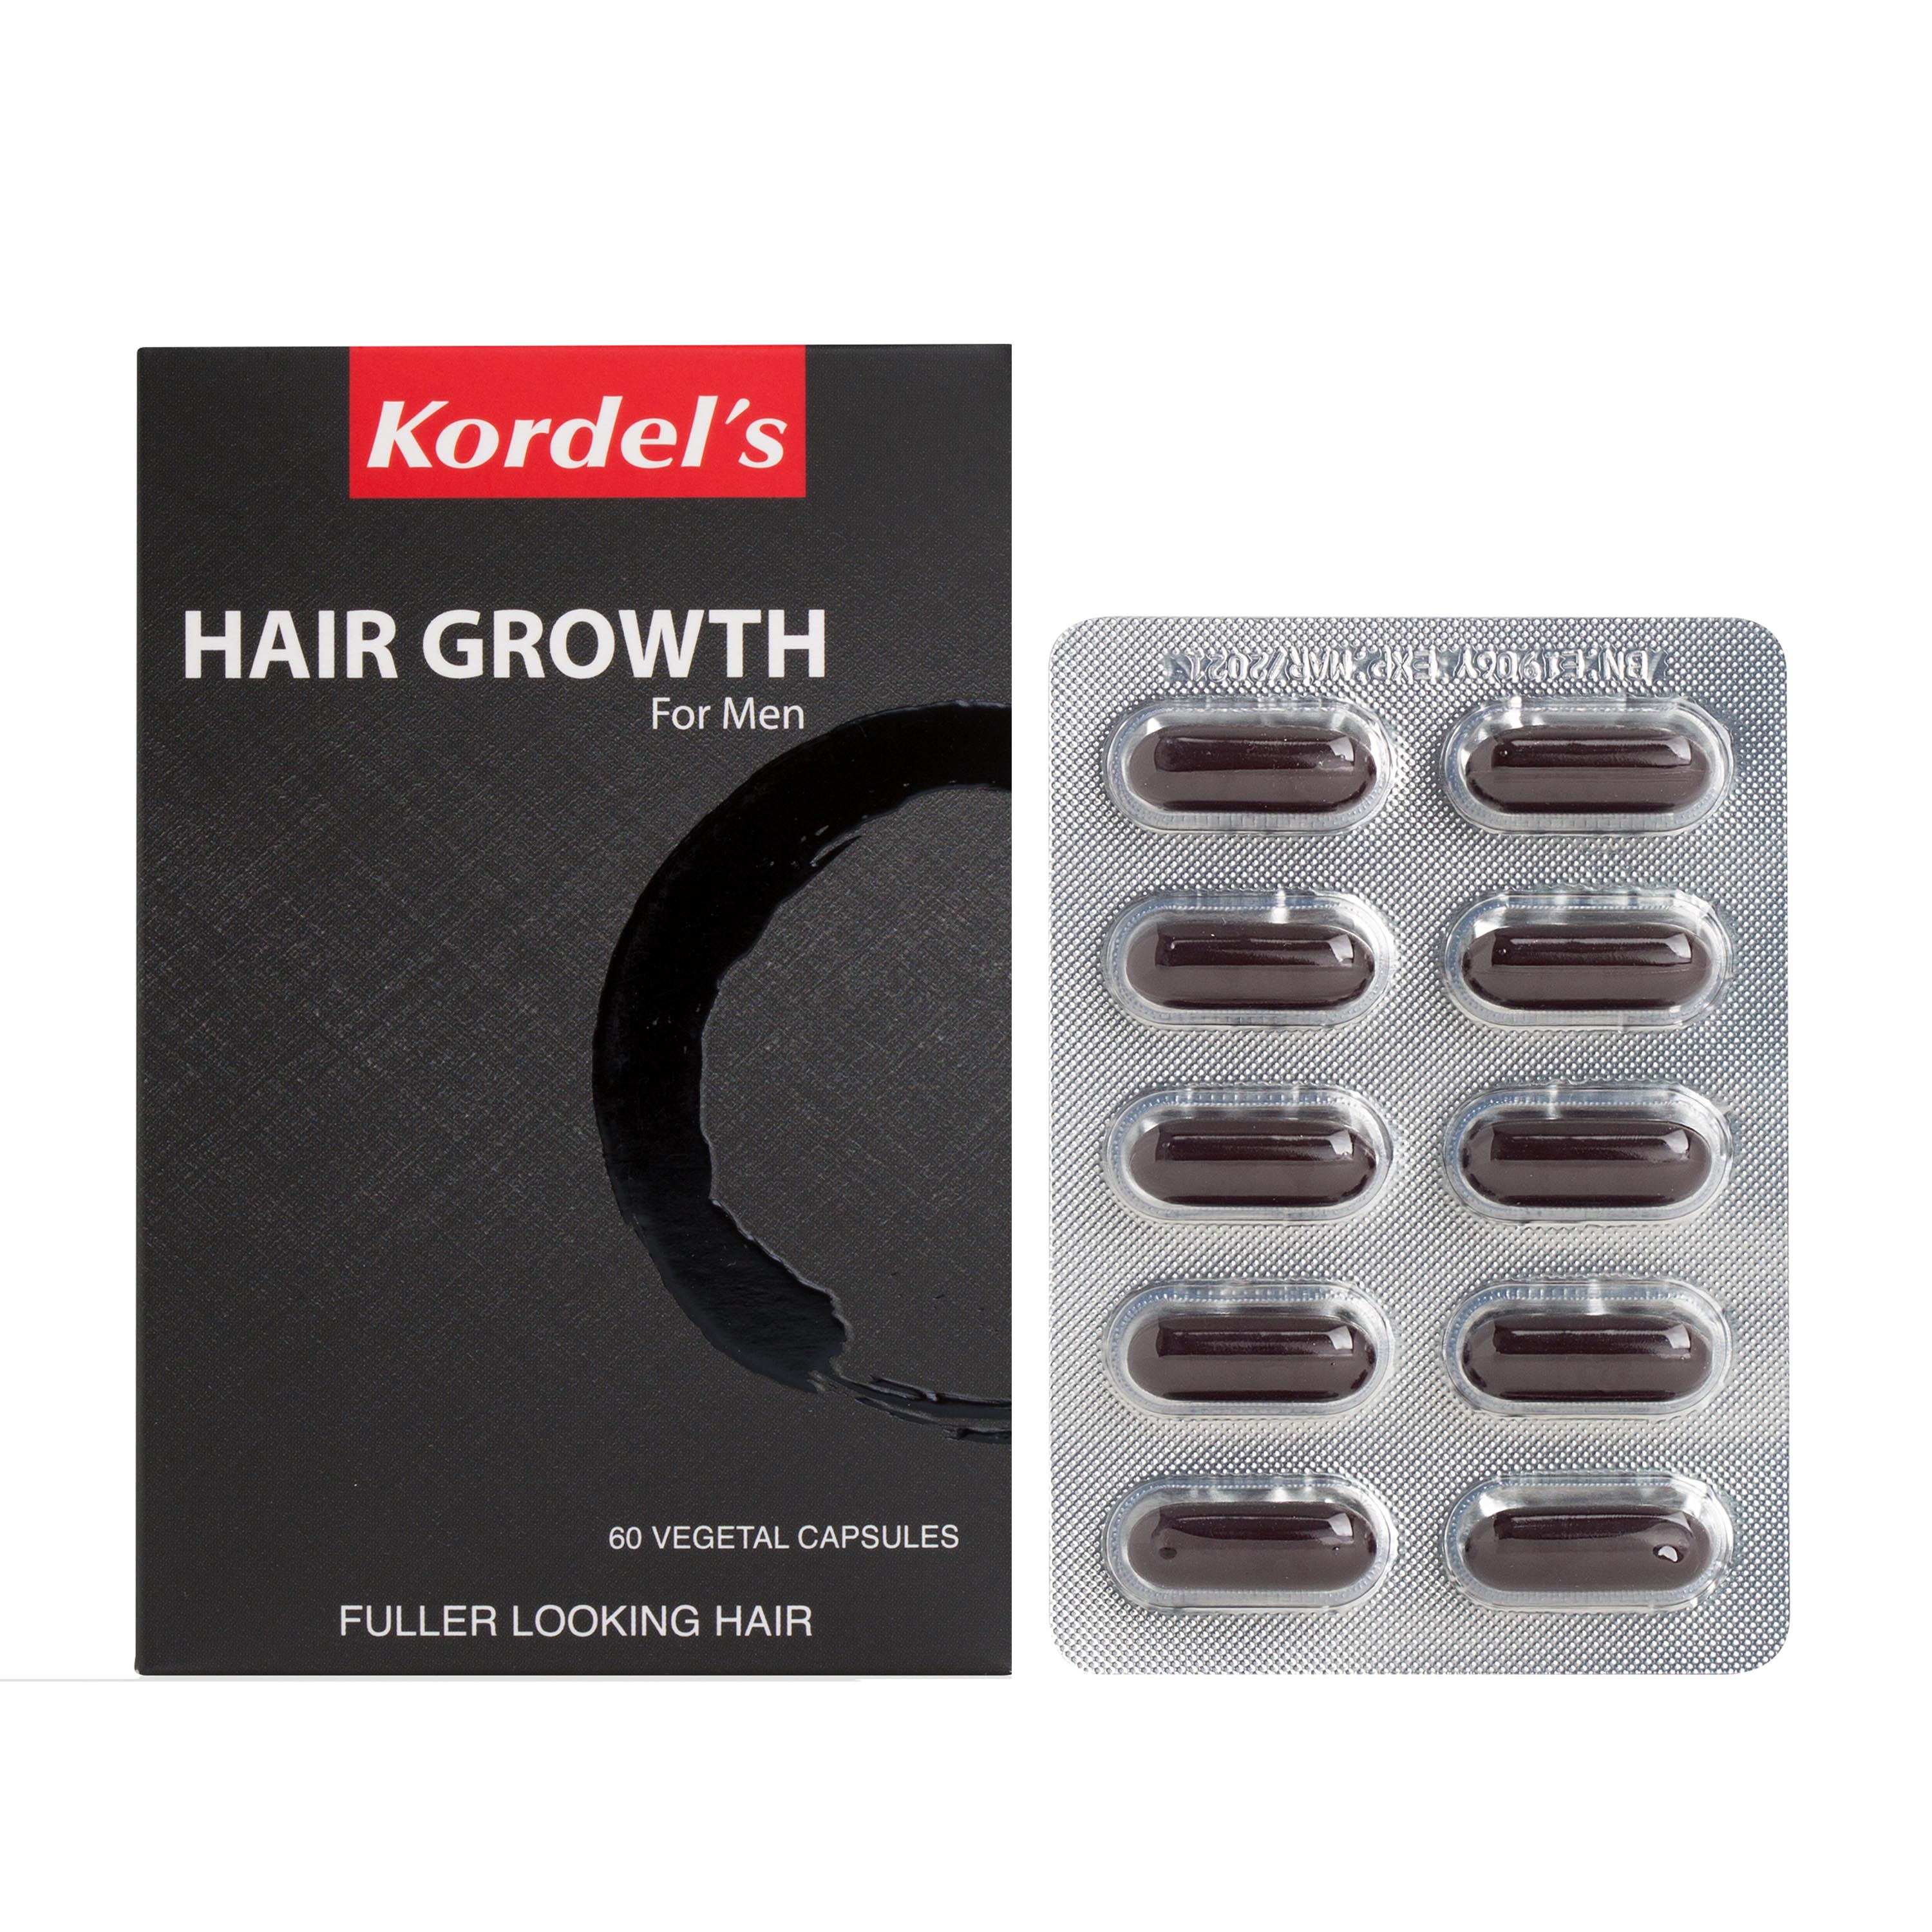 Kordel's Hair Growth For Men 60's